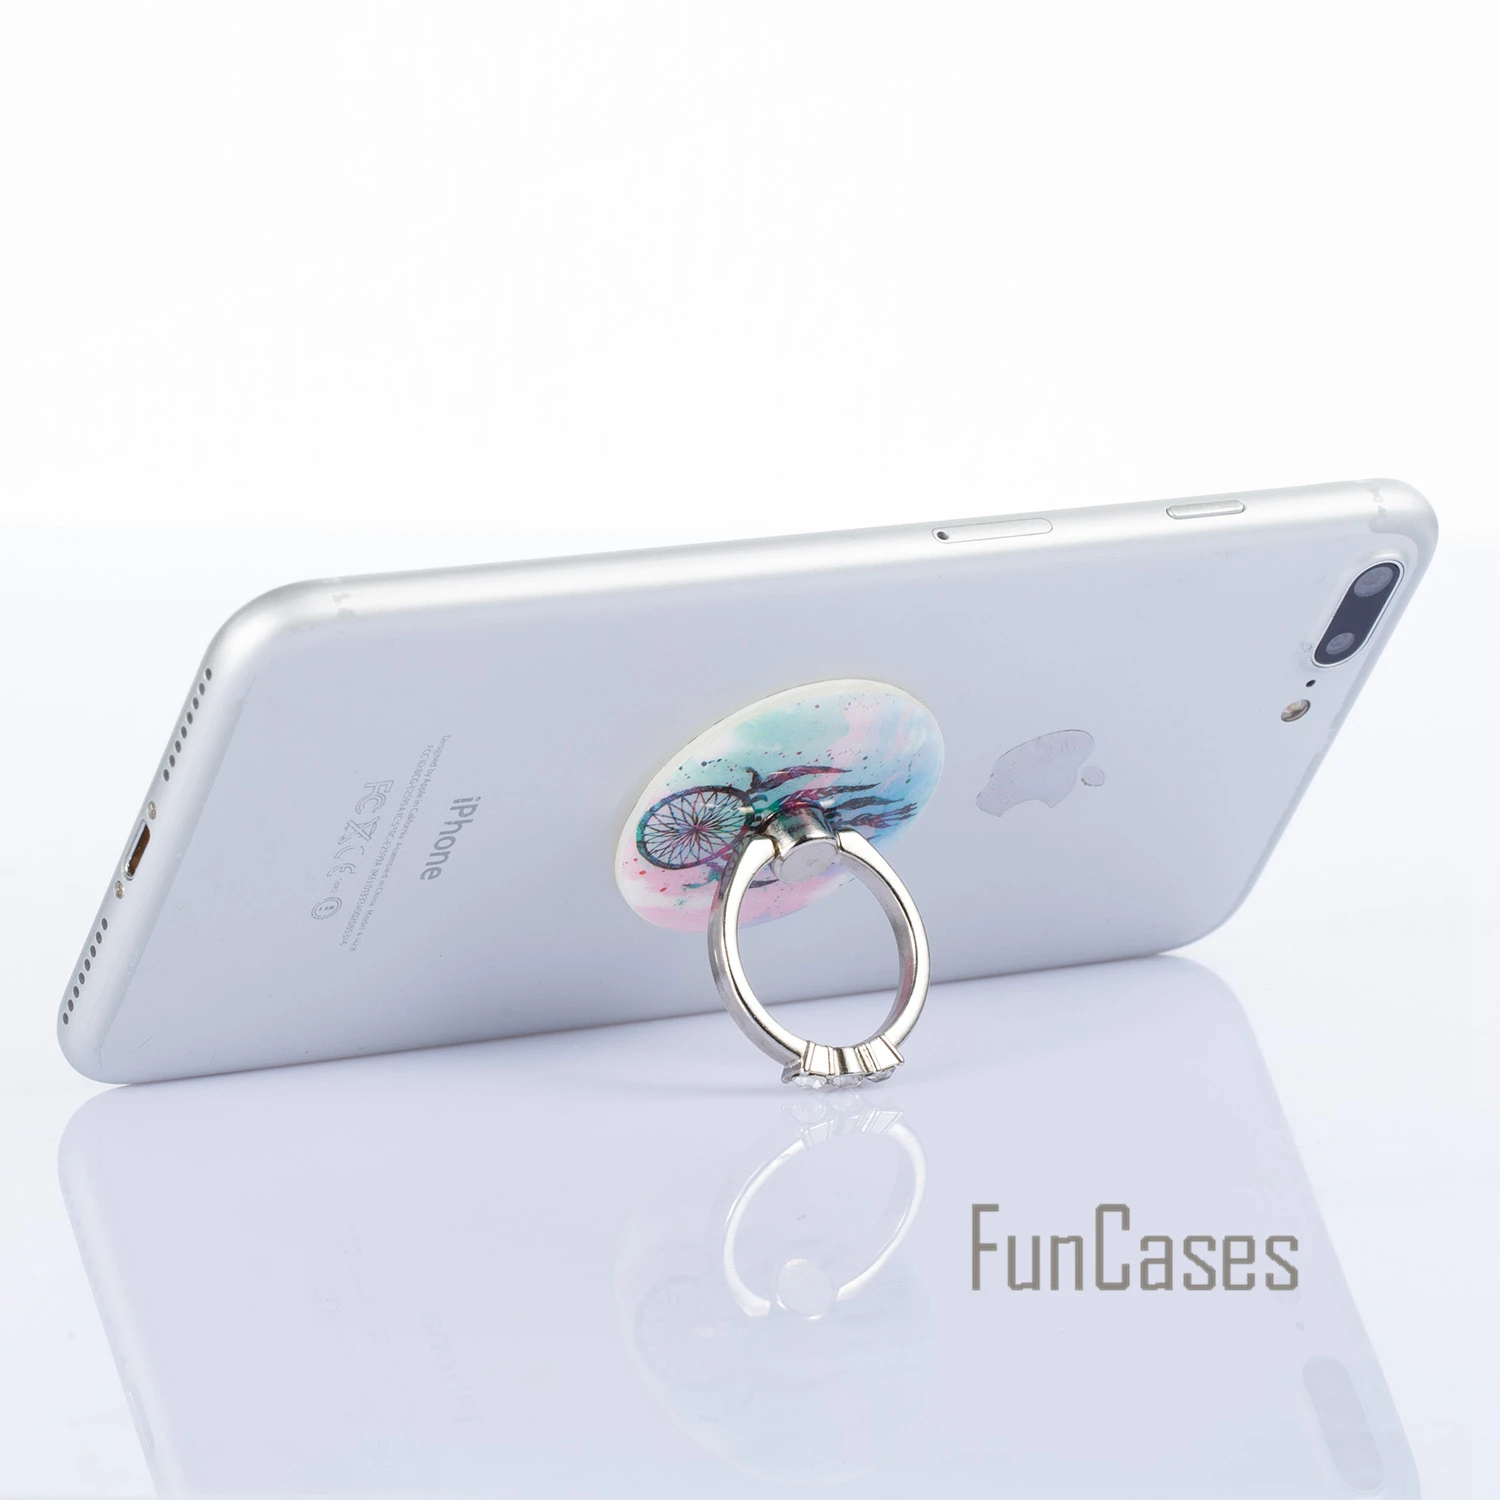 MKSUP Pop Zásuvky Telefónne sFor Samsung Galaxy J5 2016 zásuvky Držiaka Telefónu puzdro sFor Huawei P8 Lite 2017 Prst prsteň